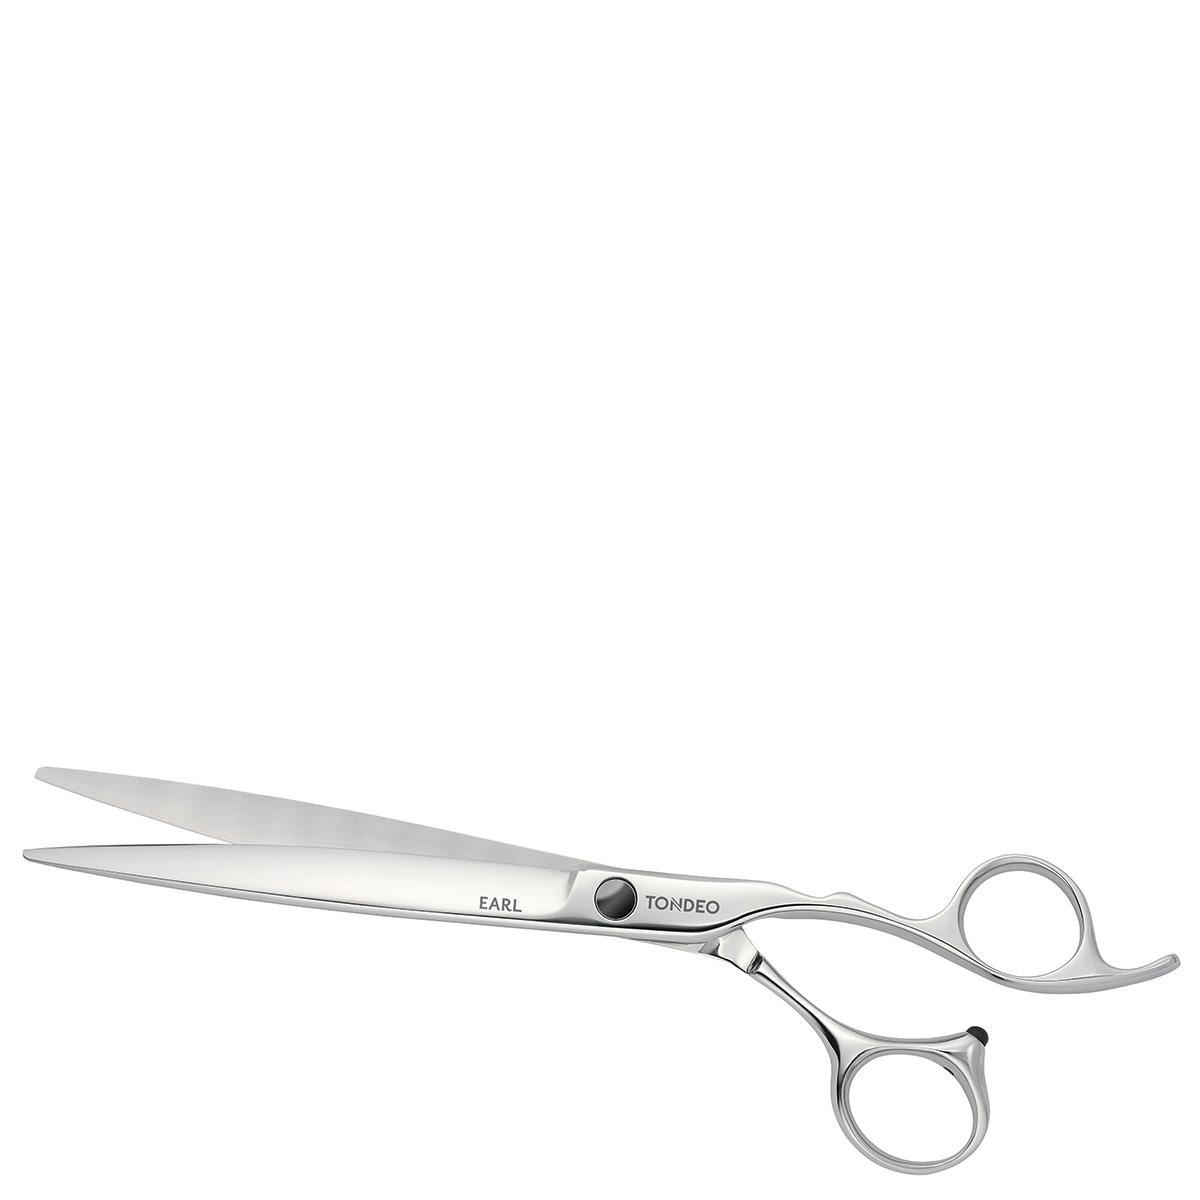 Tondeo Premium Ciseaux à cheveux Earl Offset Conblade  - 1